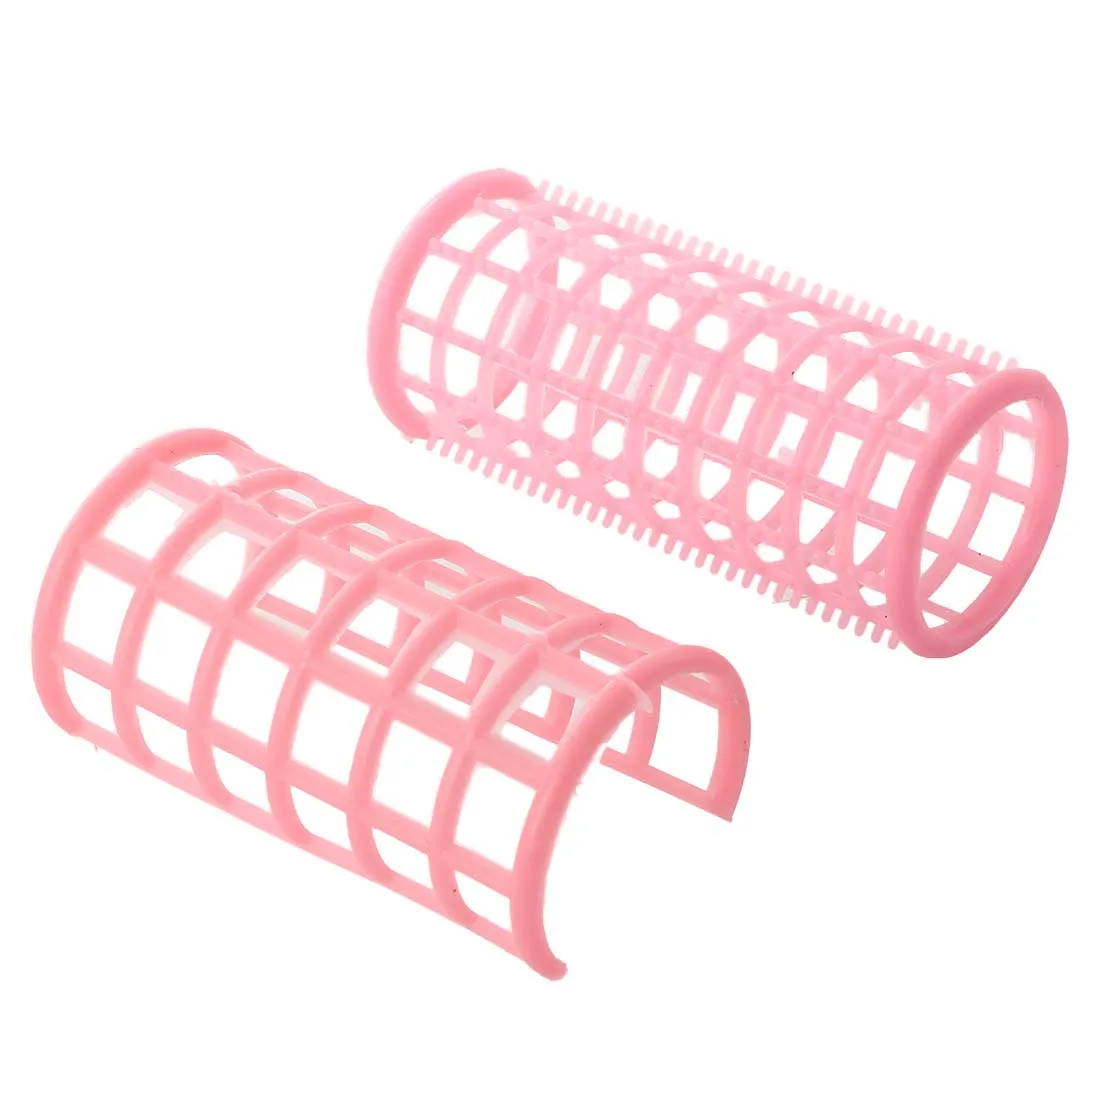 HHFF леди розовый пластиковый волшебный круг для укладки волос роликовые бигуди 10 шт